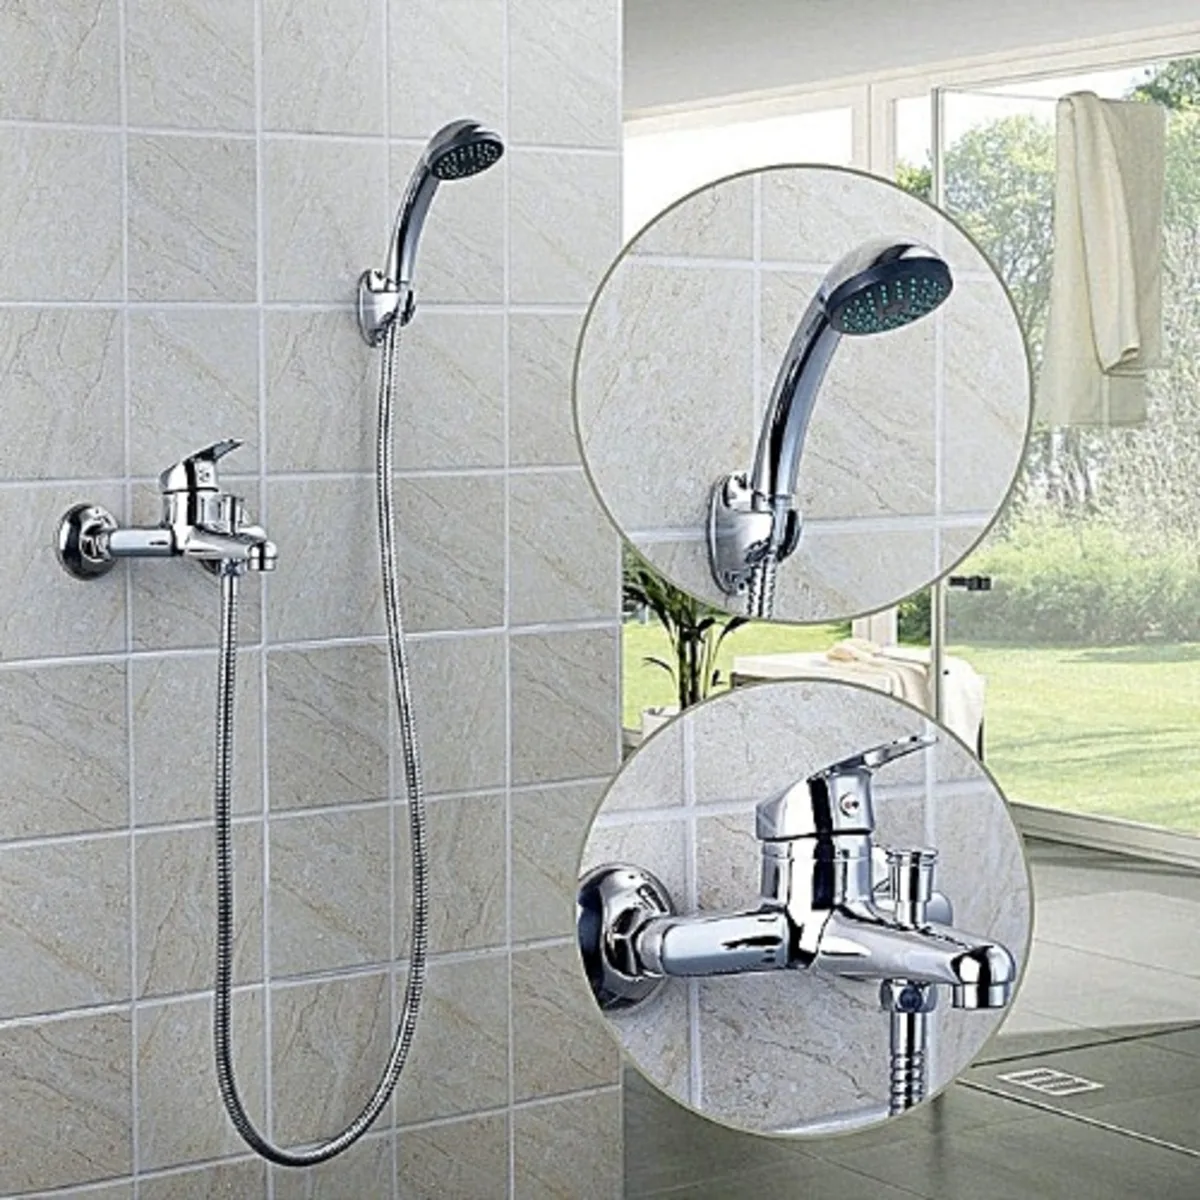 Faucet Shower Set - Bathroom Shower Sets Manufacturer - Roy Sanitary